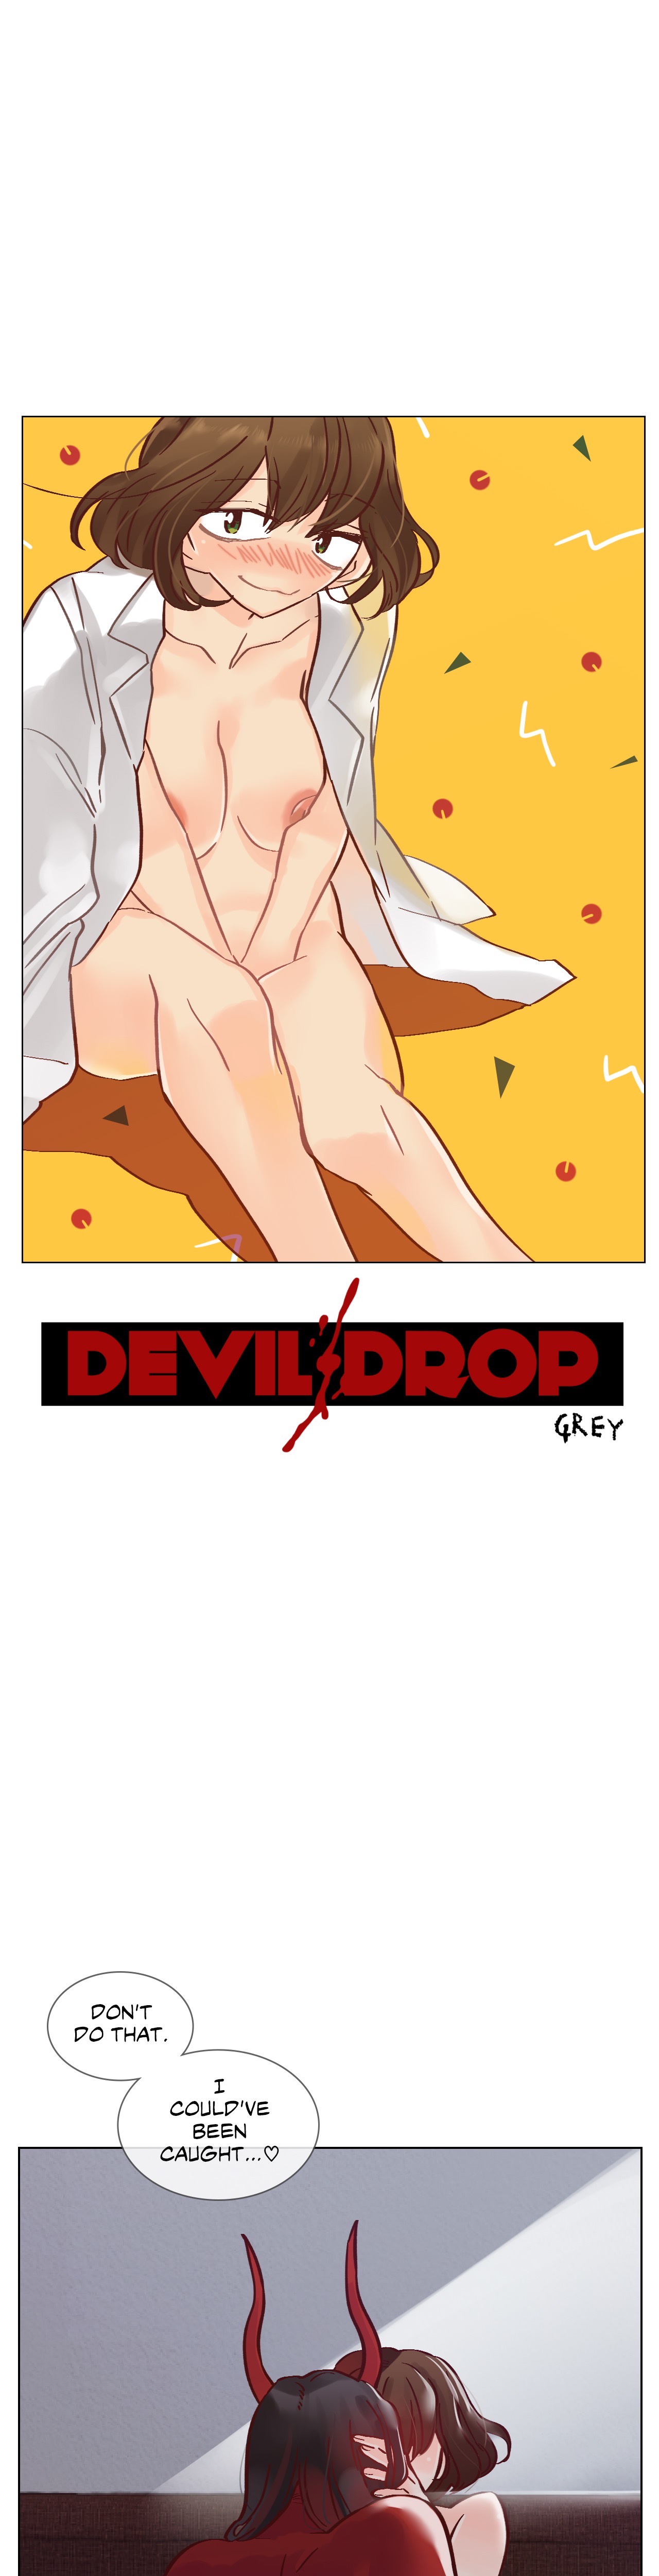 Devil Drop image